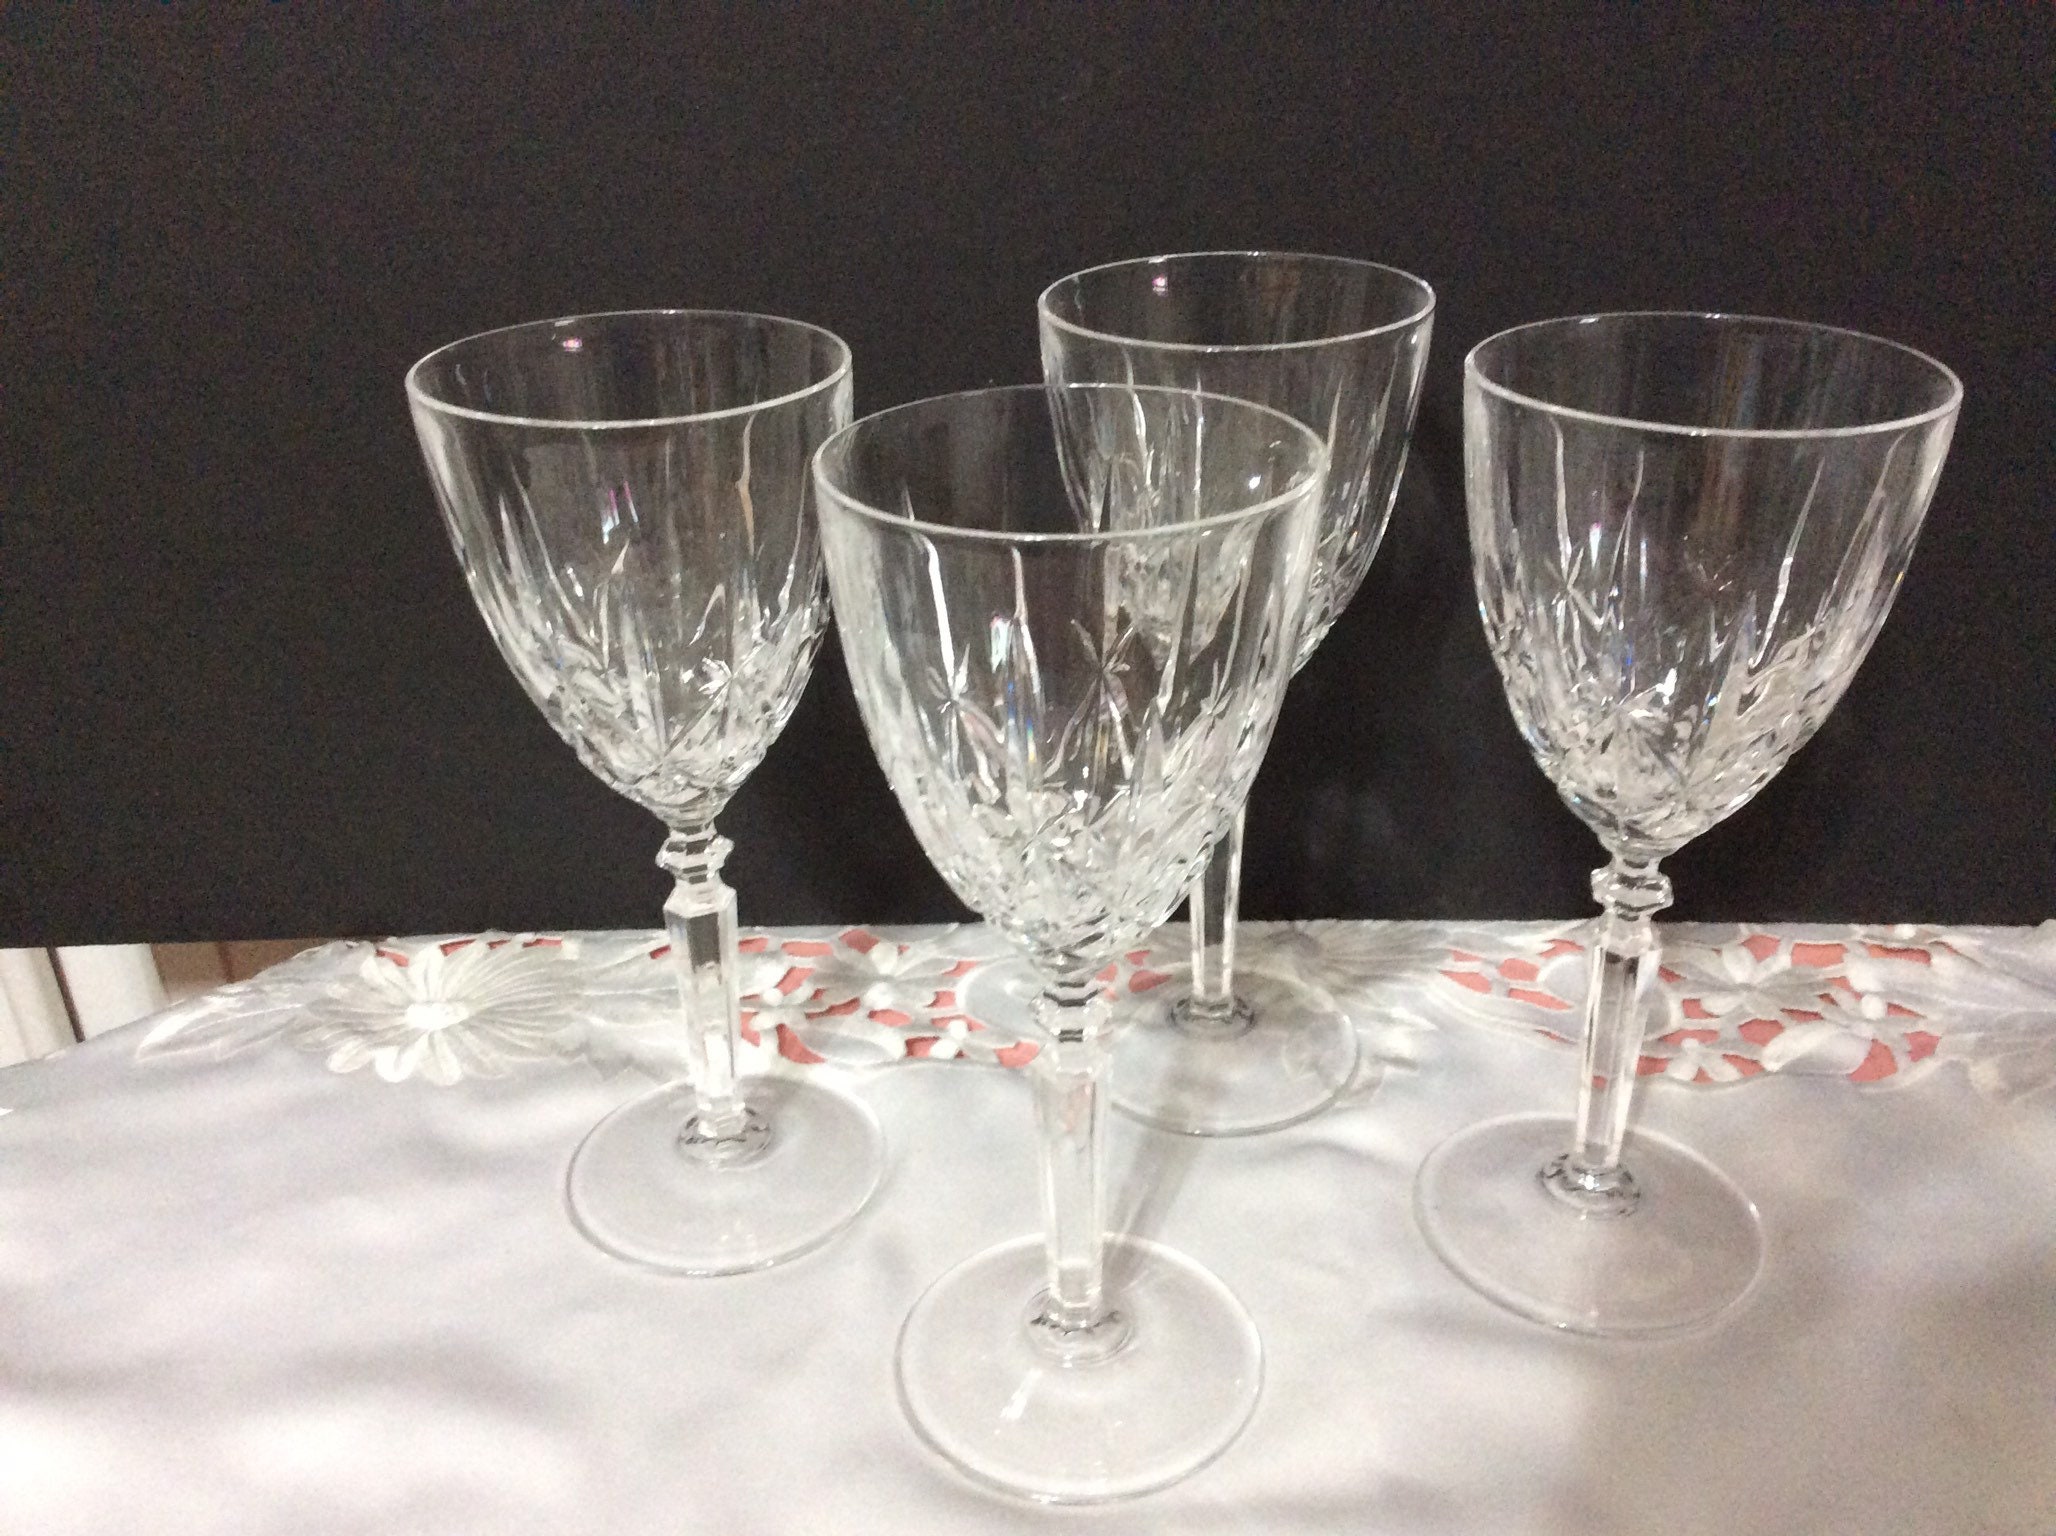 Entrée Set/4 5.5 Crystal Drinking Glasses